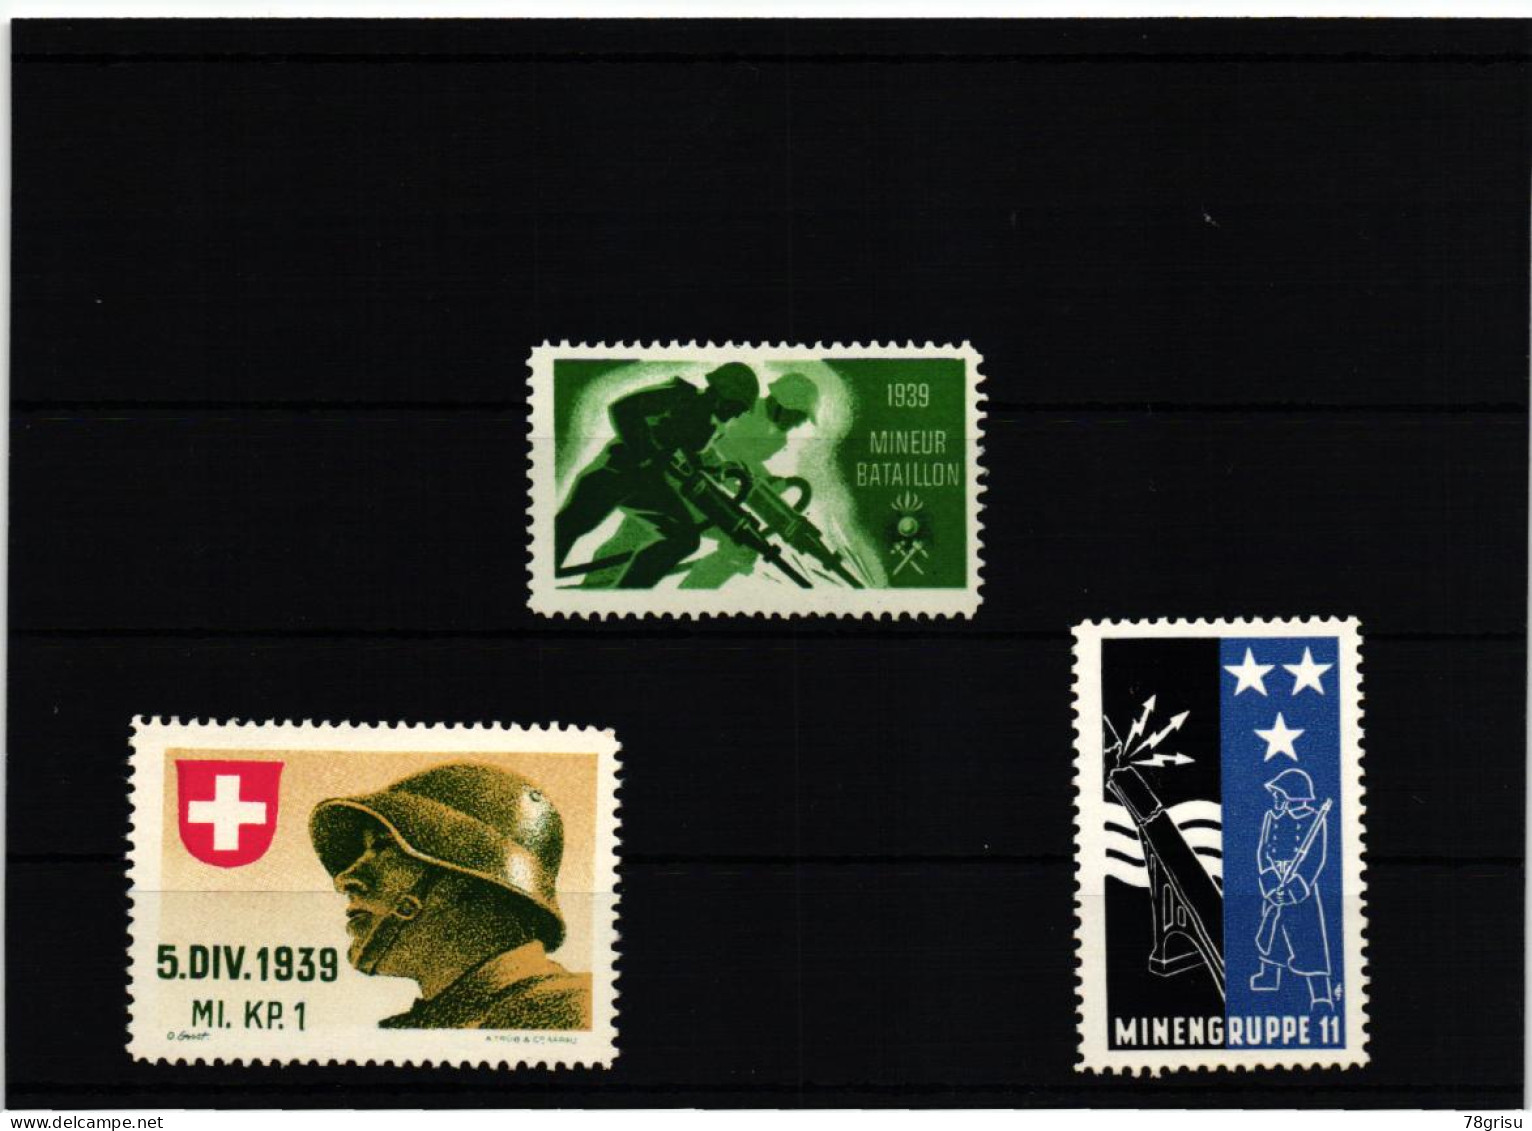 Schweiz Soldatenmarken, MINIEUR BATAILLON; MINENGRUPPE; MI. KP. 1939 - Labels